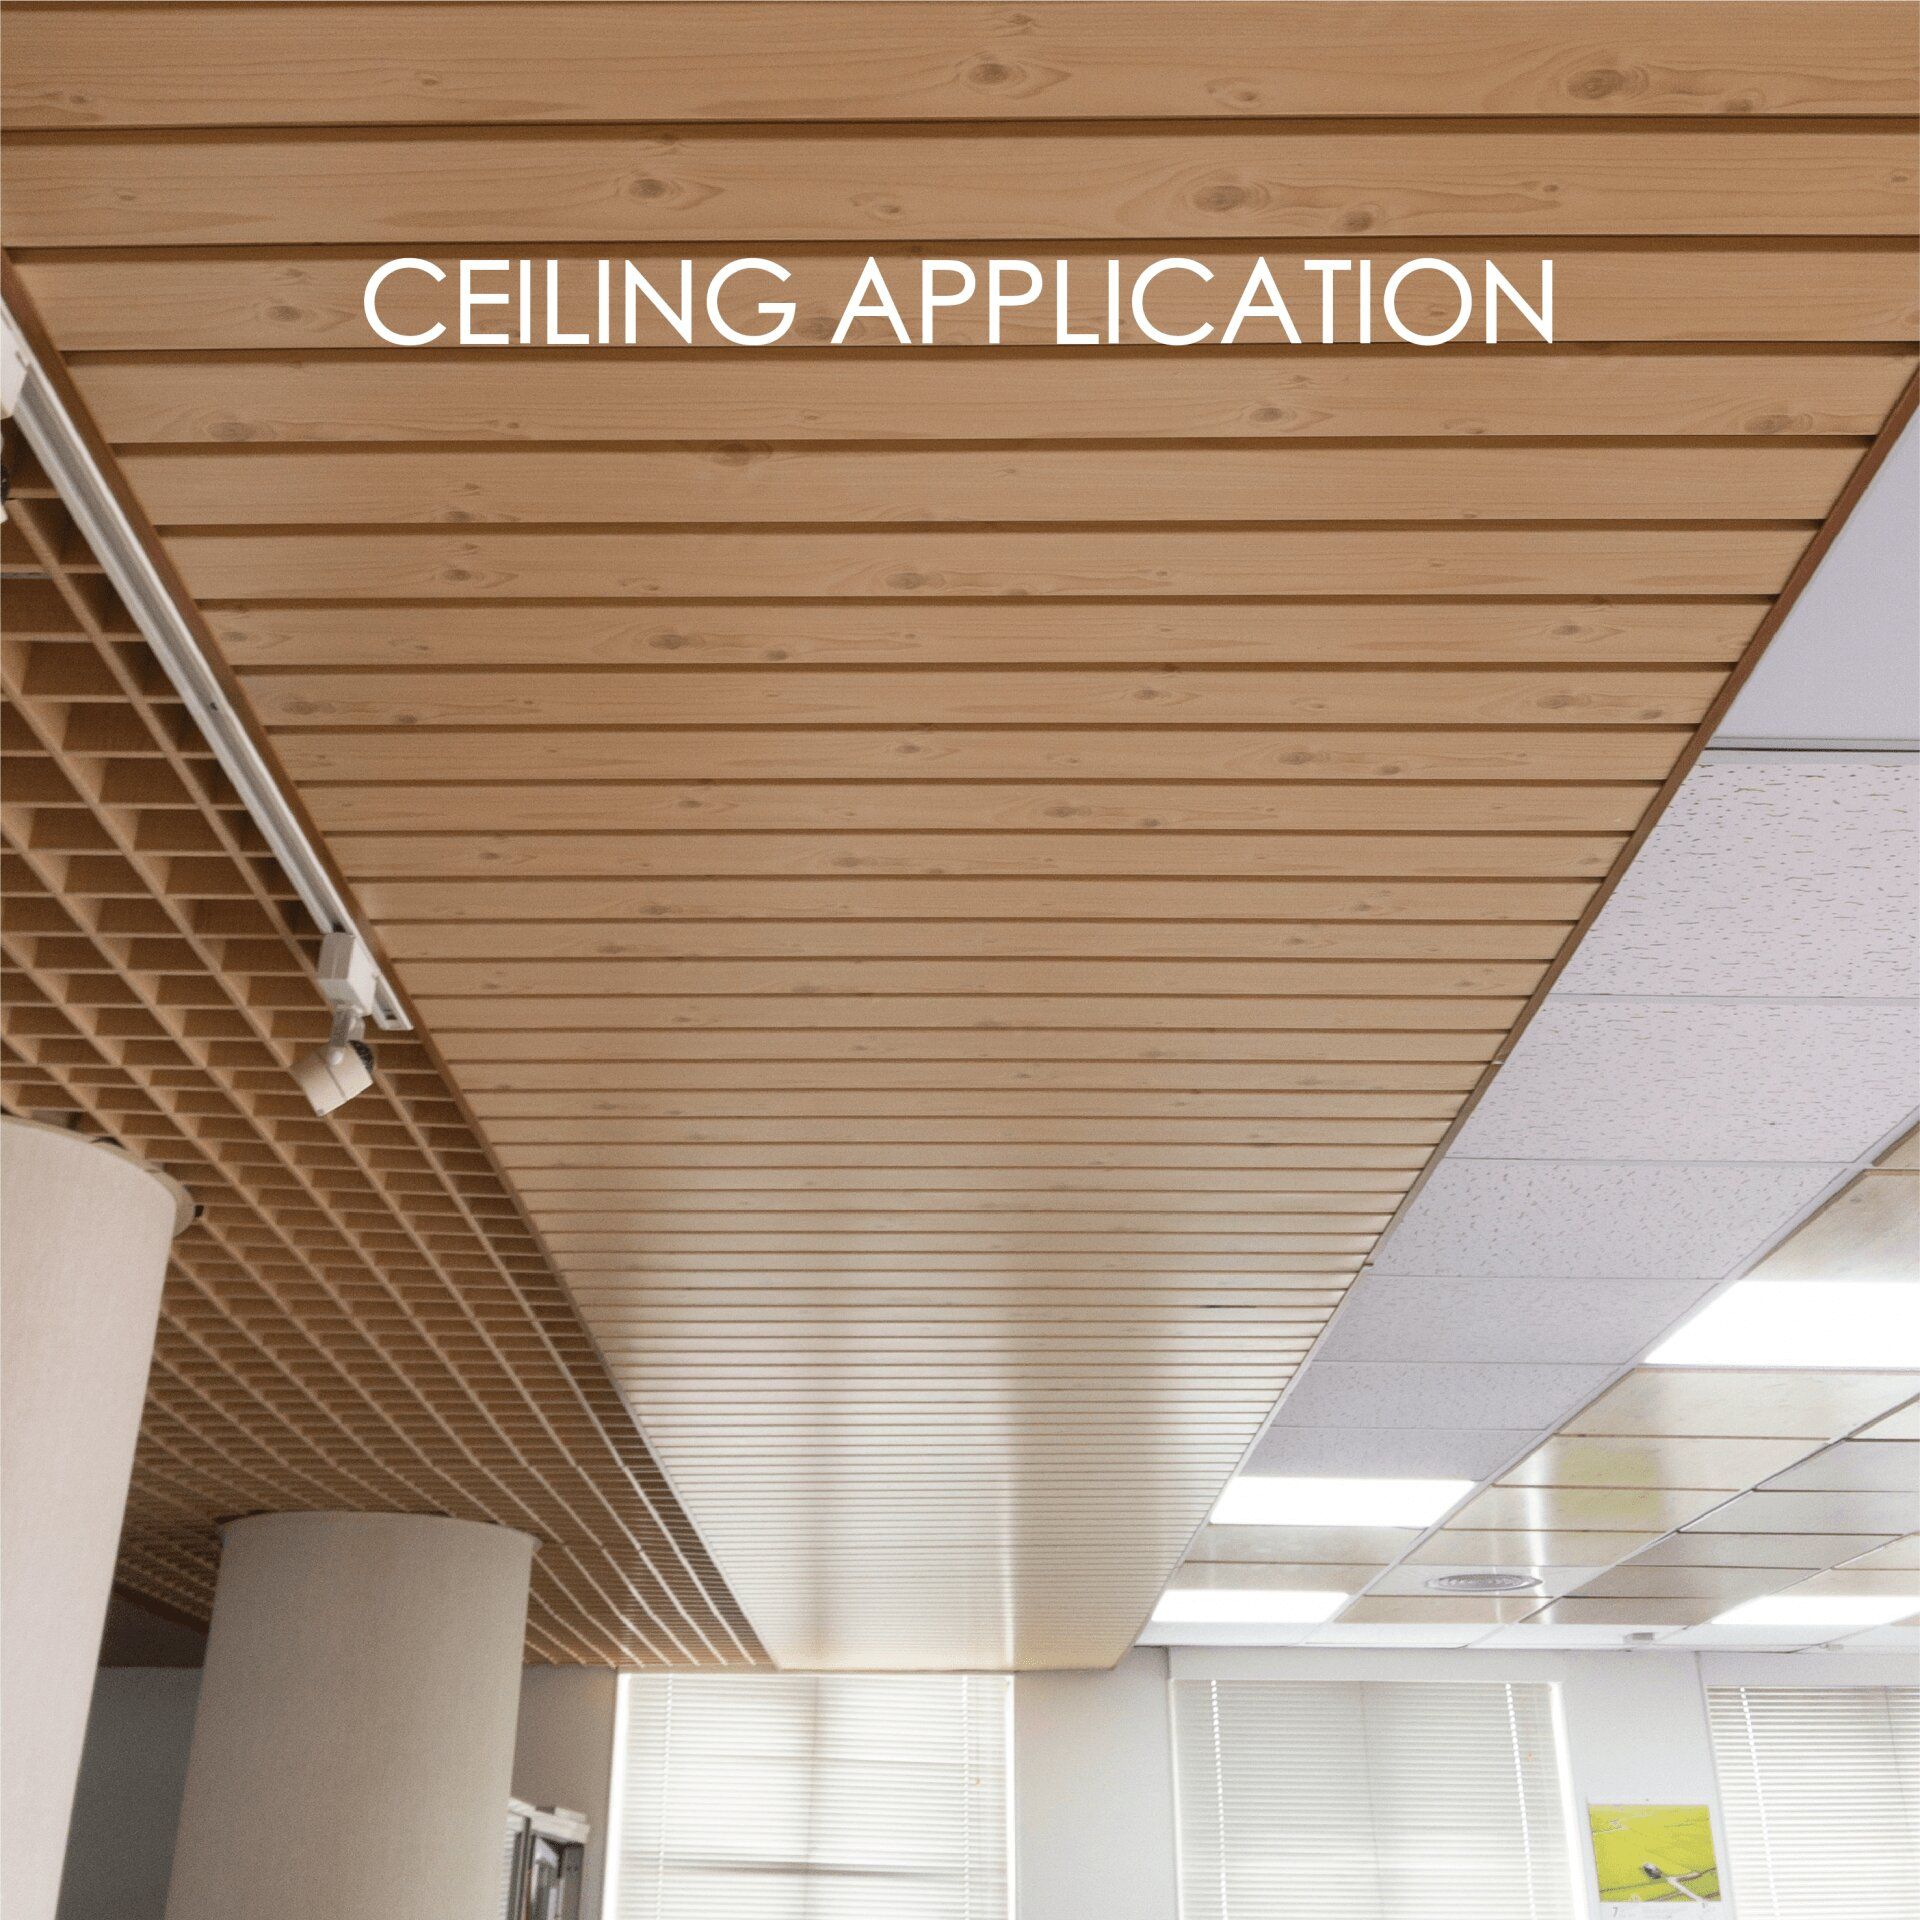 Sử dụng kim loại phủ laminate để làm trần nhà tạo thêm tính thẩm mỹ và độ bền